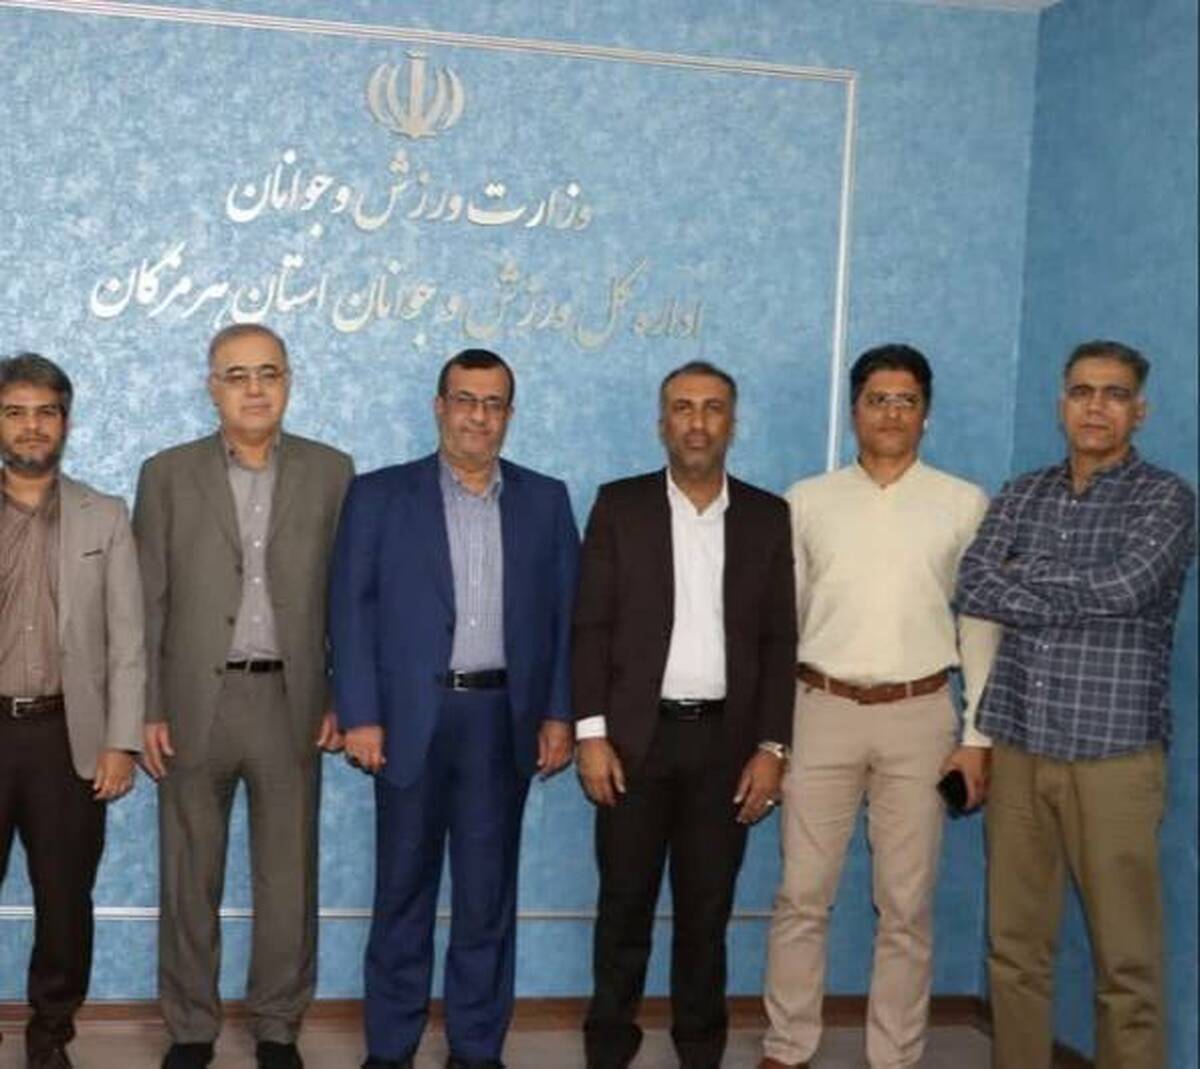 دو نماینده مردم هرمزگان در مجلس شورای اسلامی به مناسبت هفته تربیت بدنی و ورزش با مدیر کل ورزش وجوانان دیدار و گفت و گو کردند.